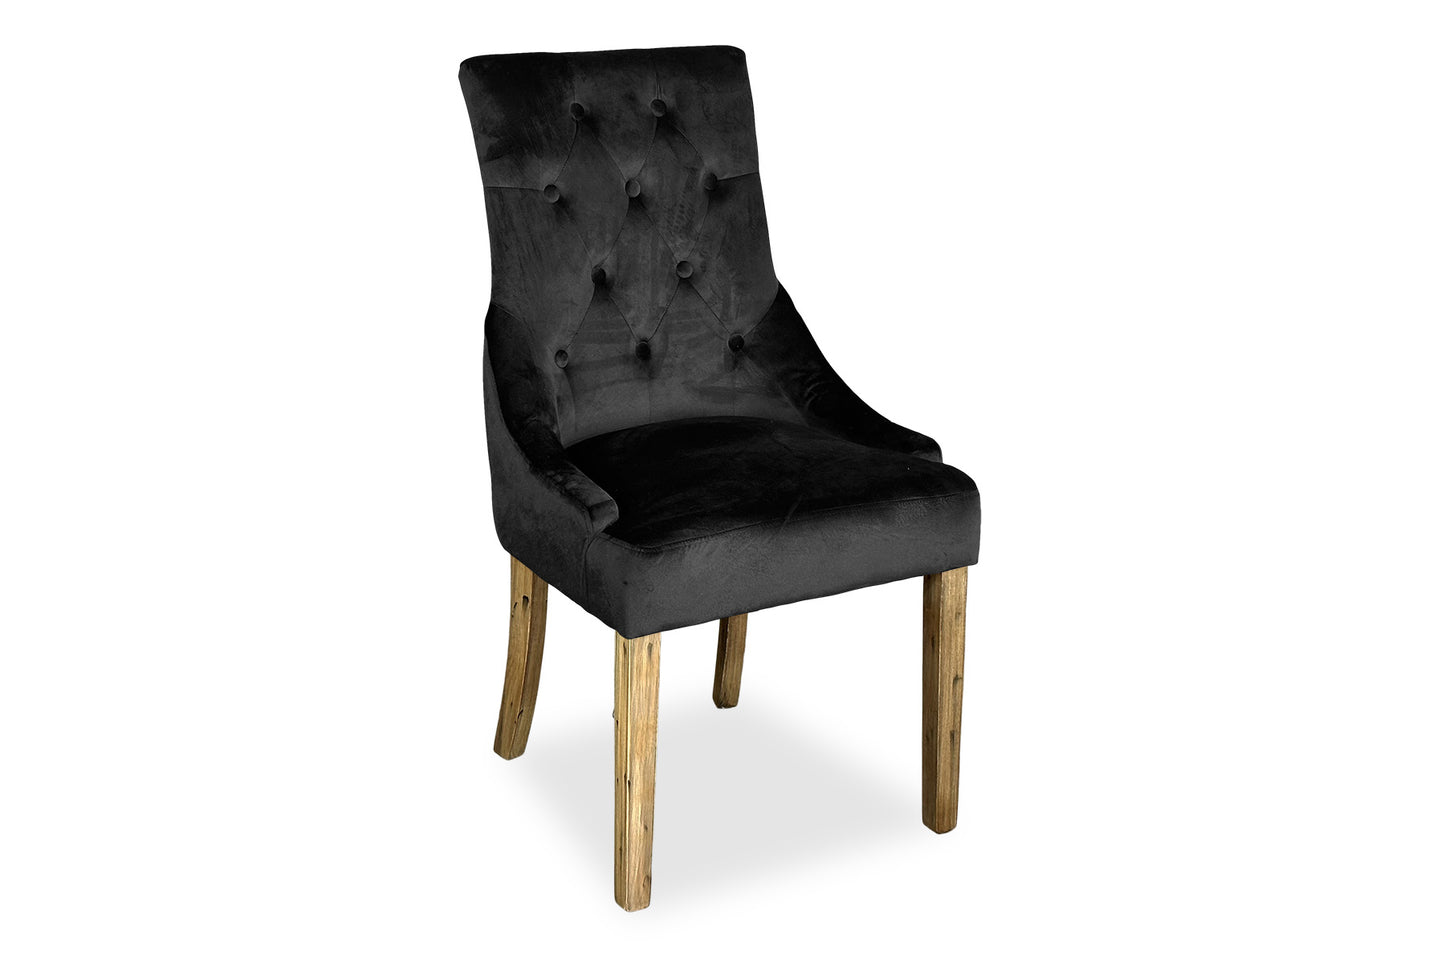 Antique Scoop Back Chair - Black Velvet